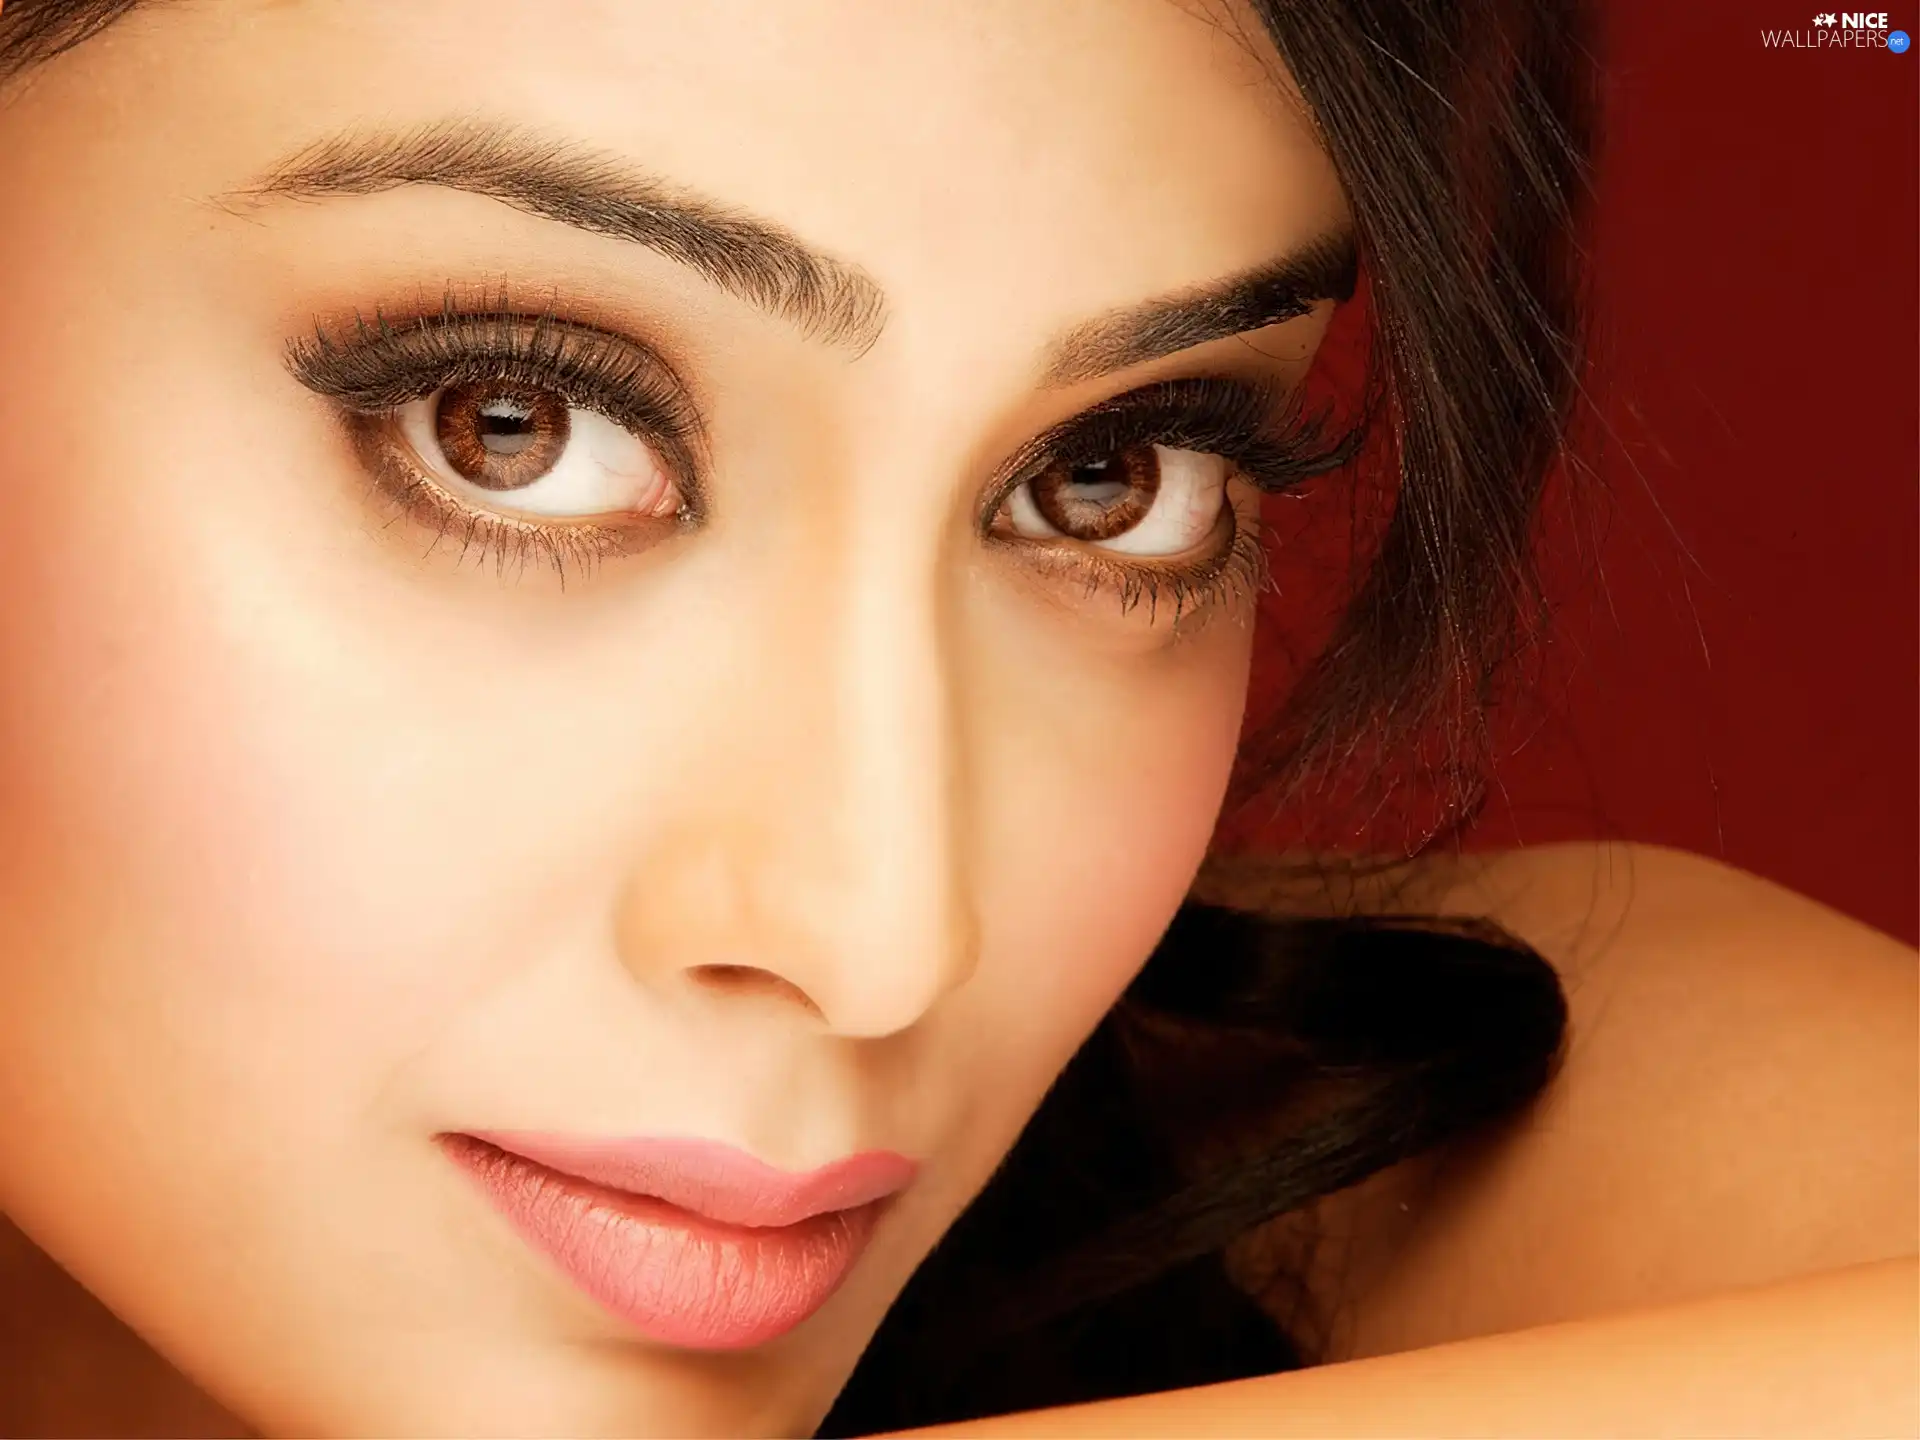 make-up, Shriya Saran, The look